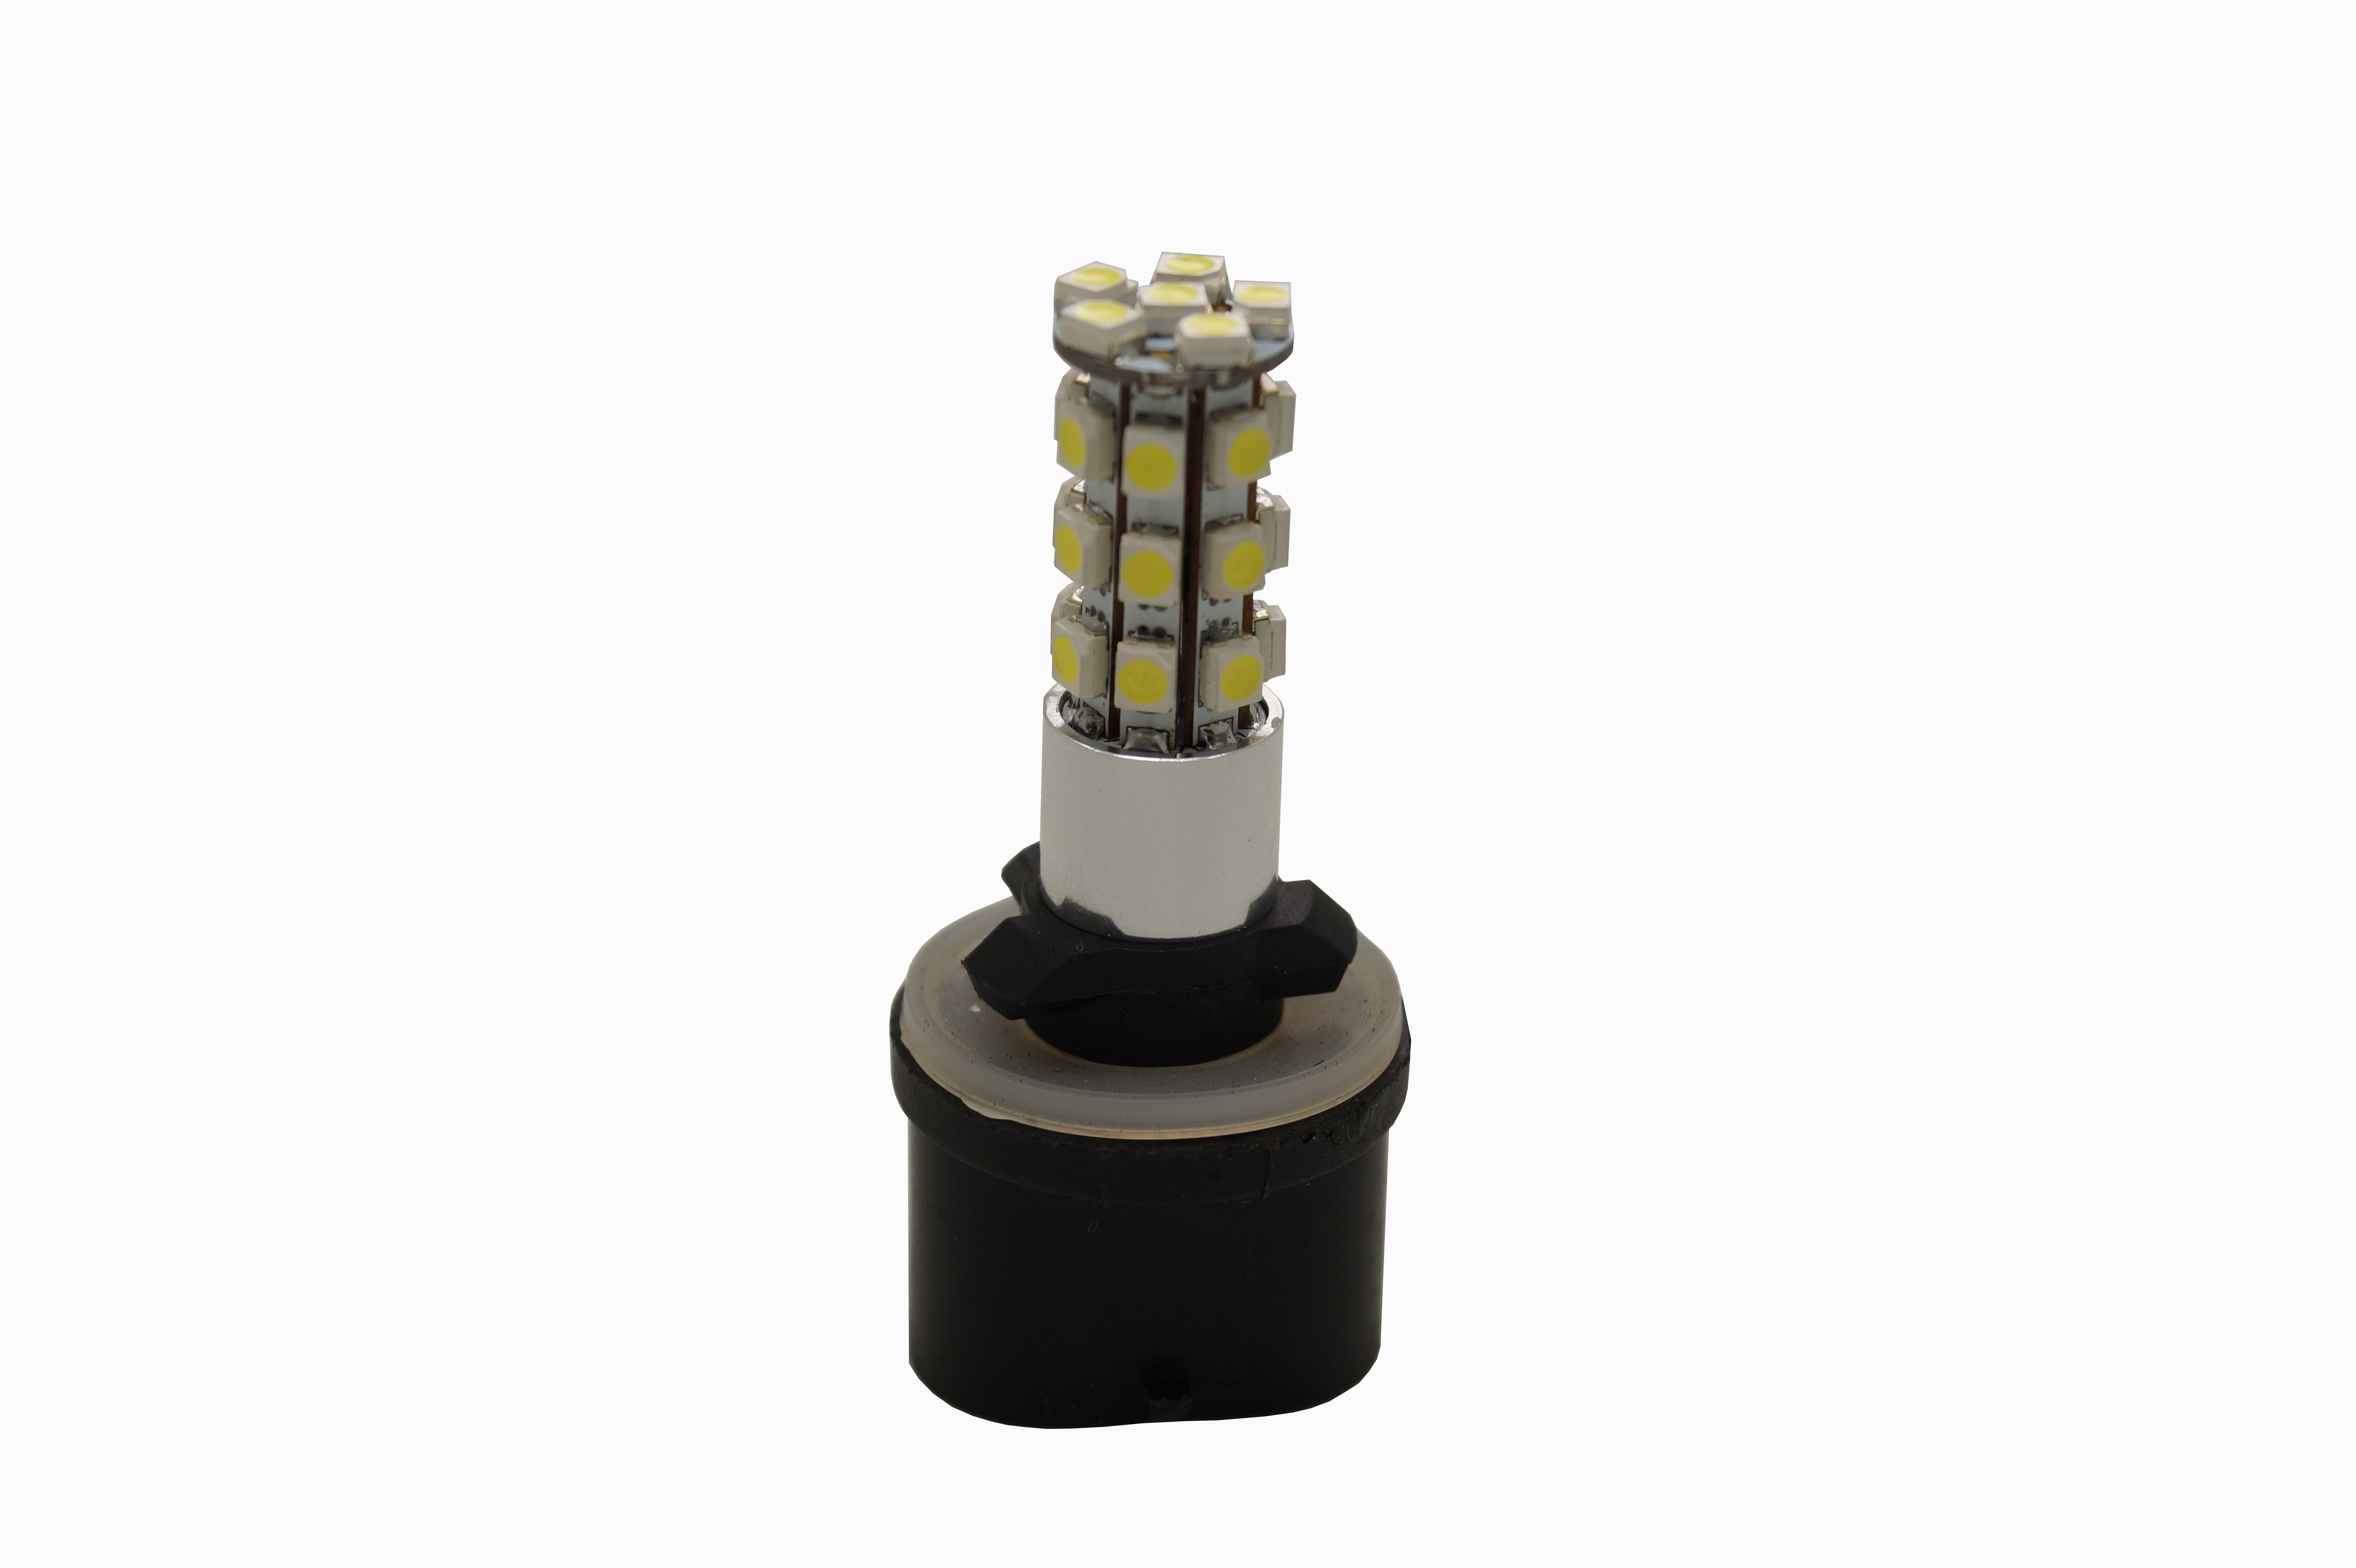 Bombilla LED antiniebla brillante de 60 mm para luces DRL o antiniebla